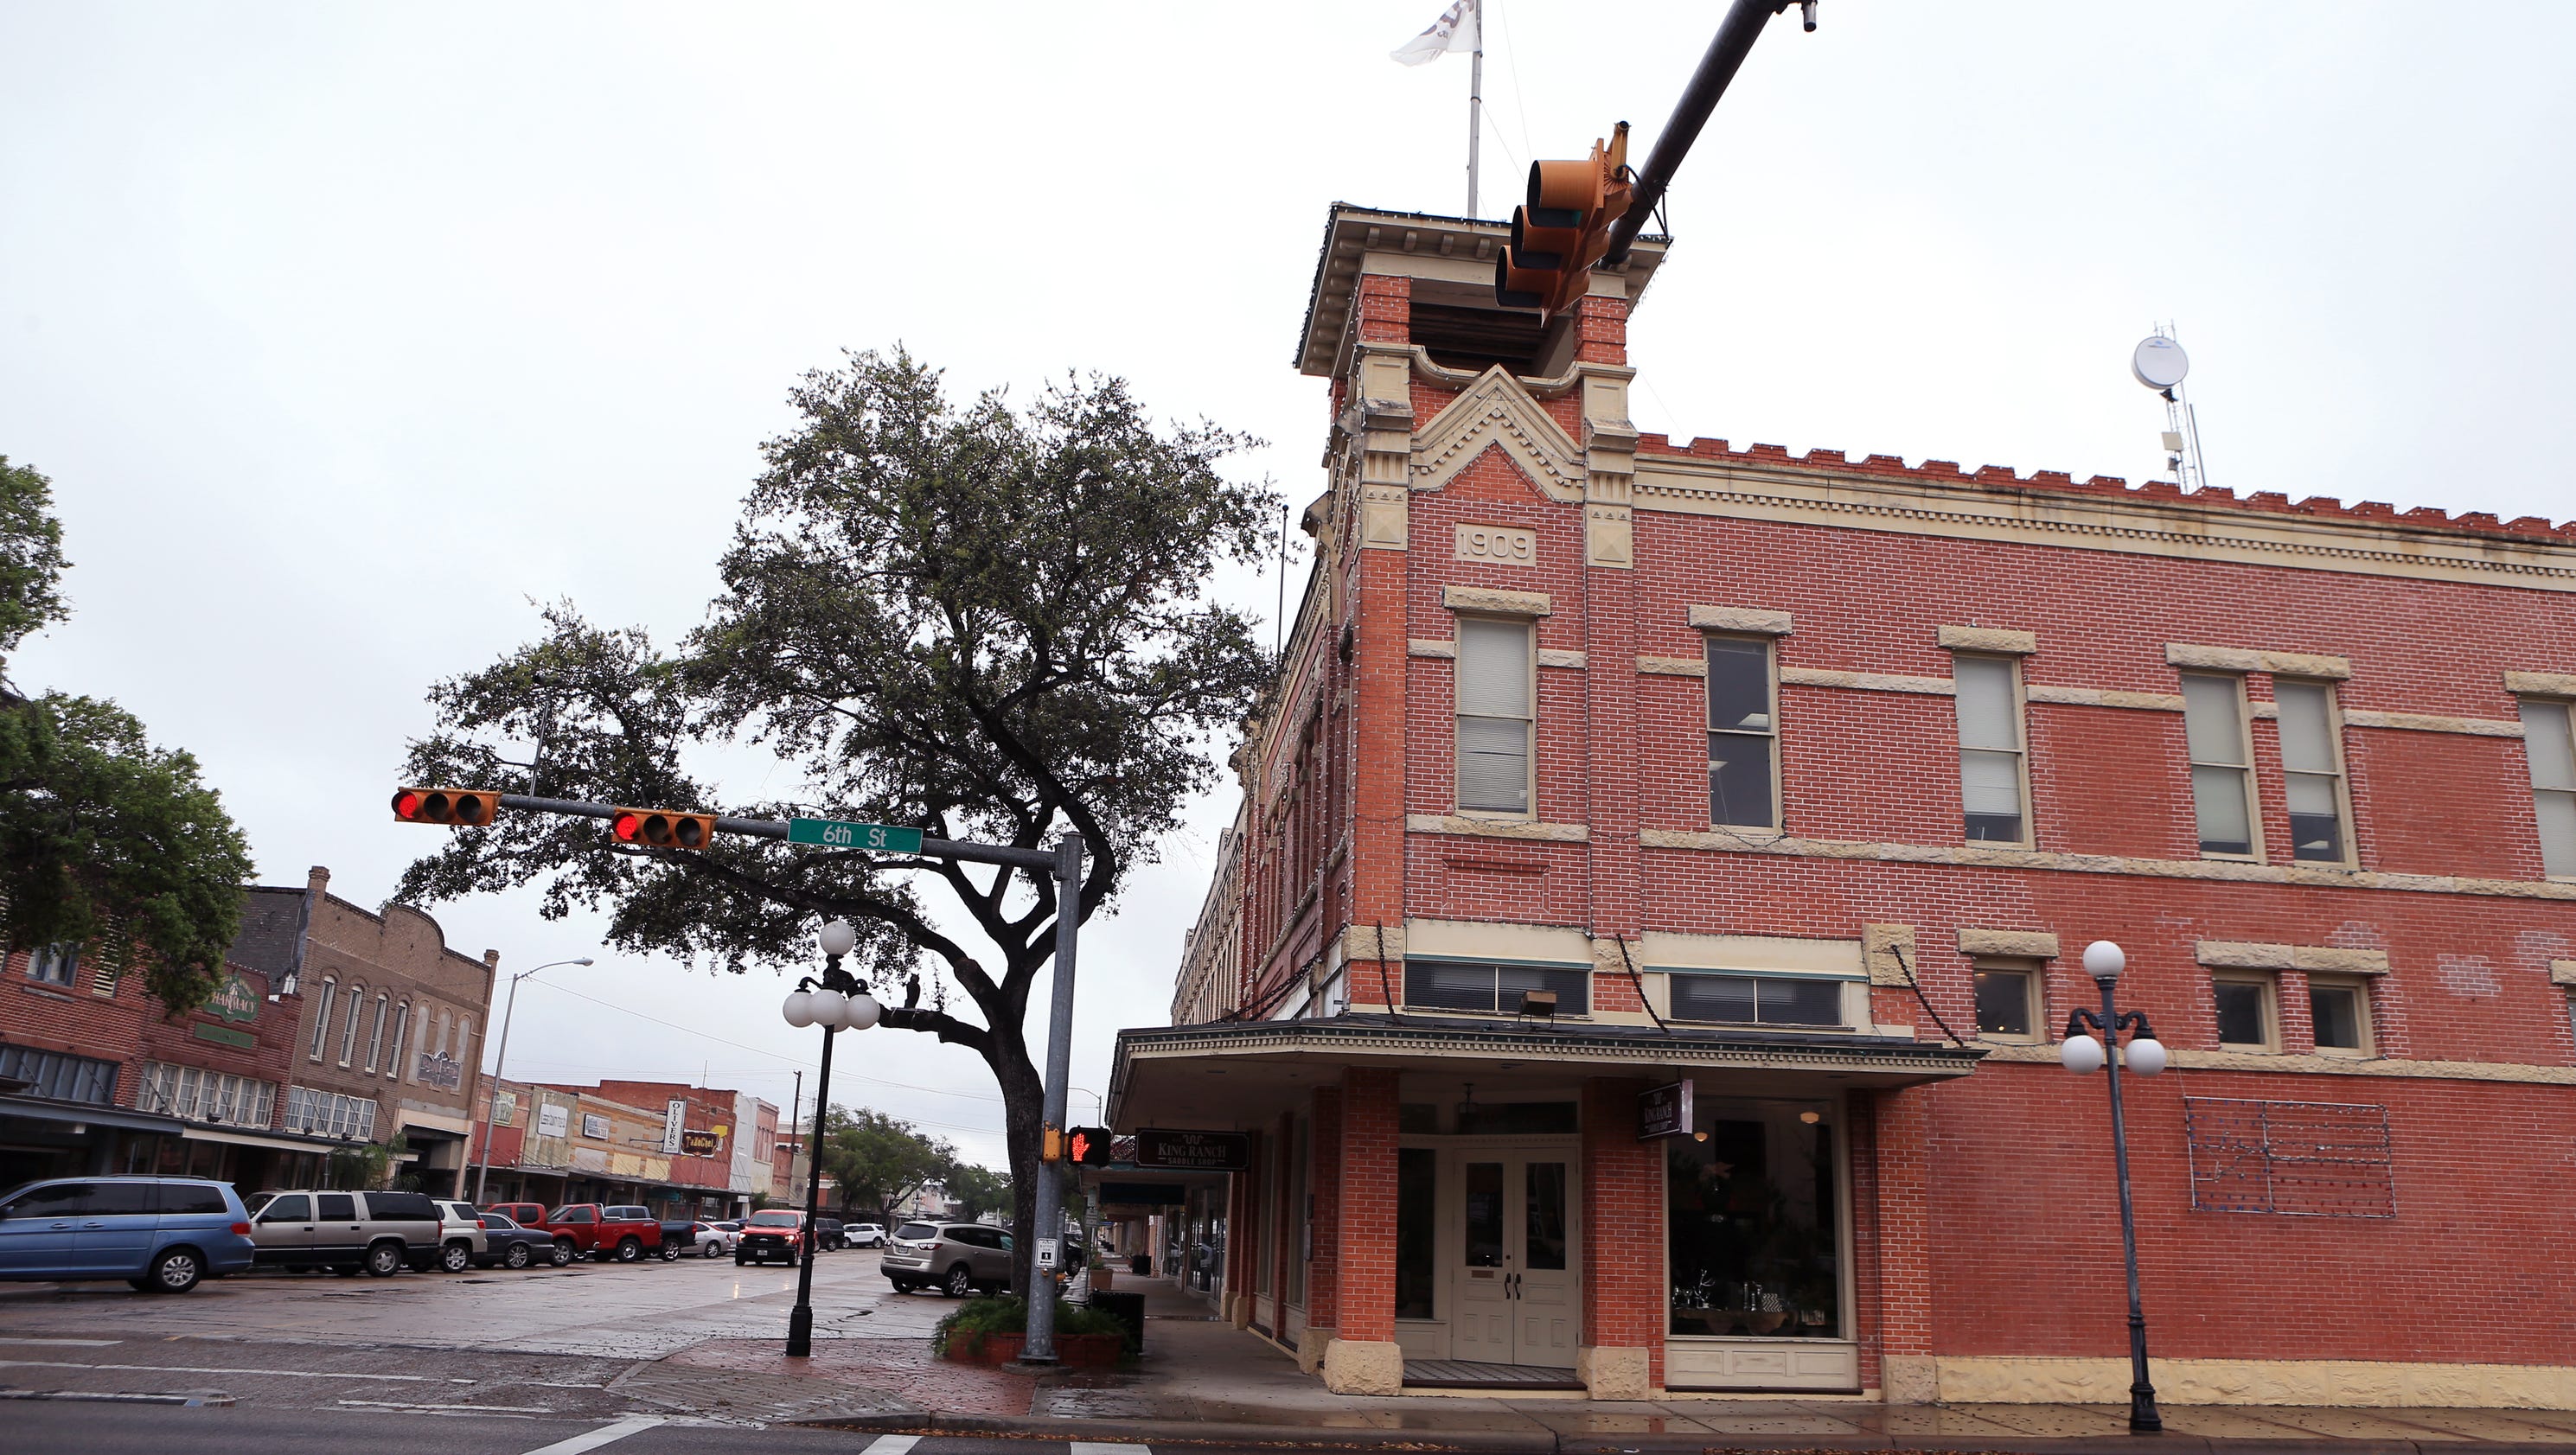 Downtown Kingsville due for major facelift - Corpus Christi Caller-Times